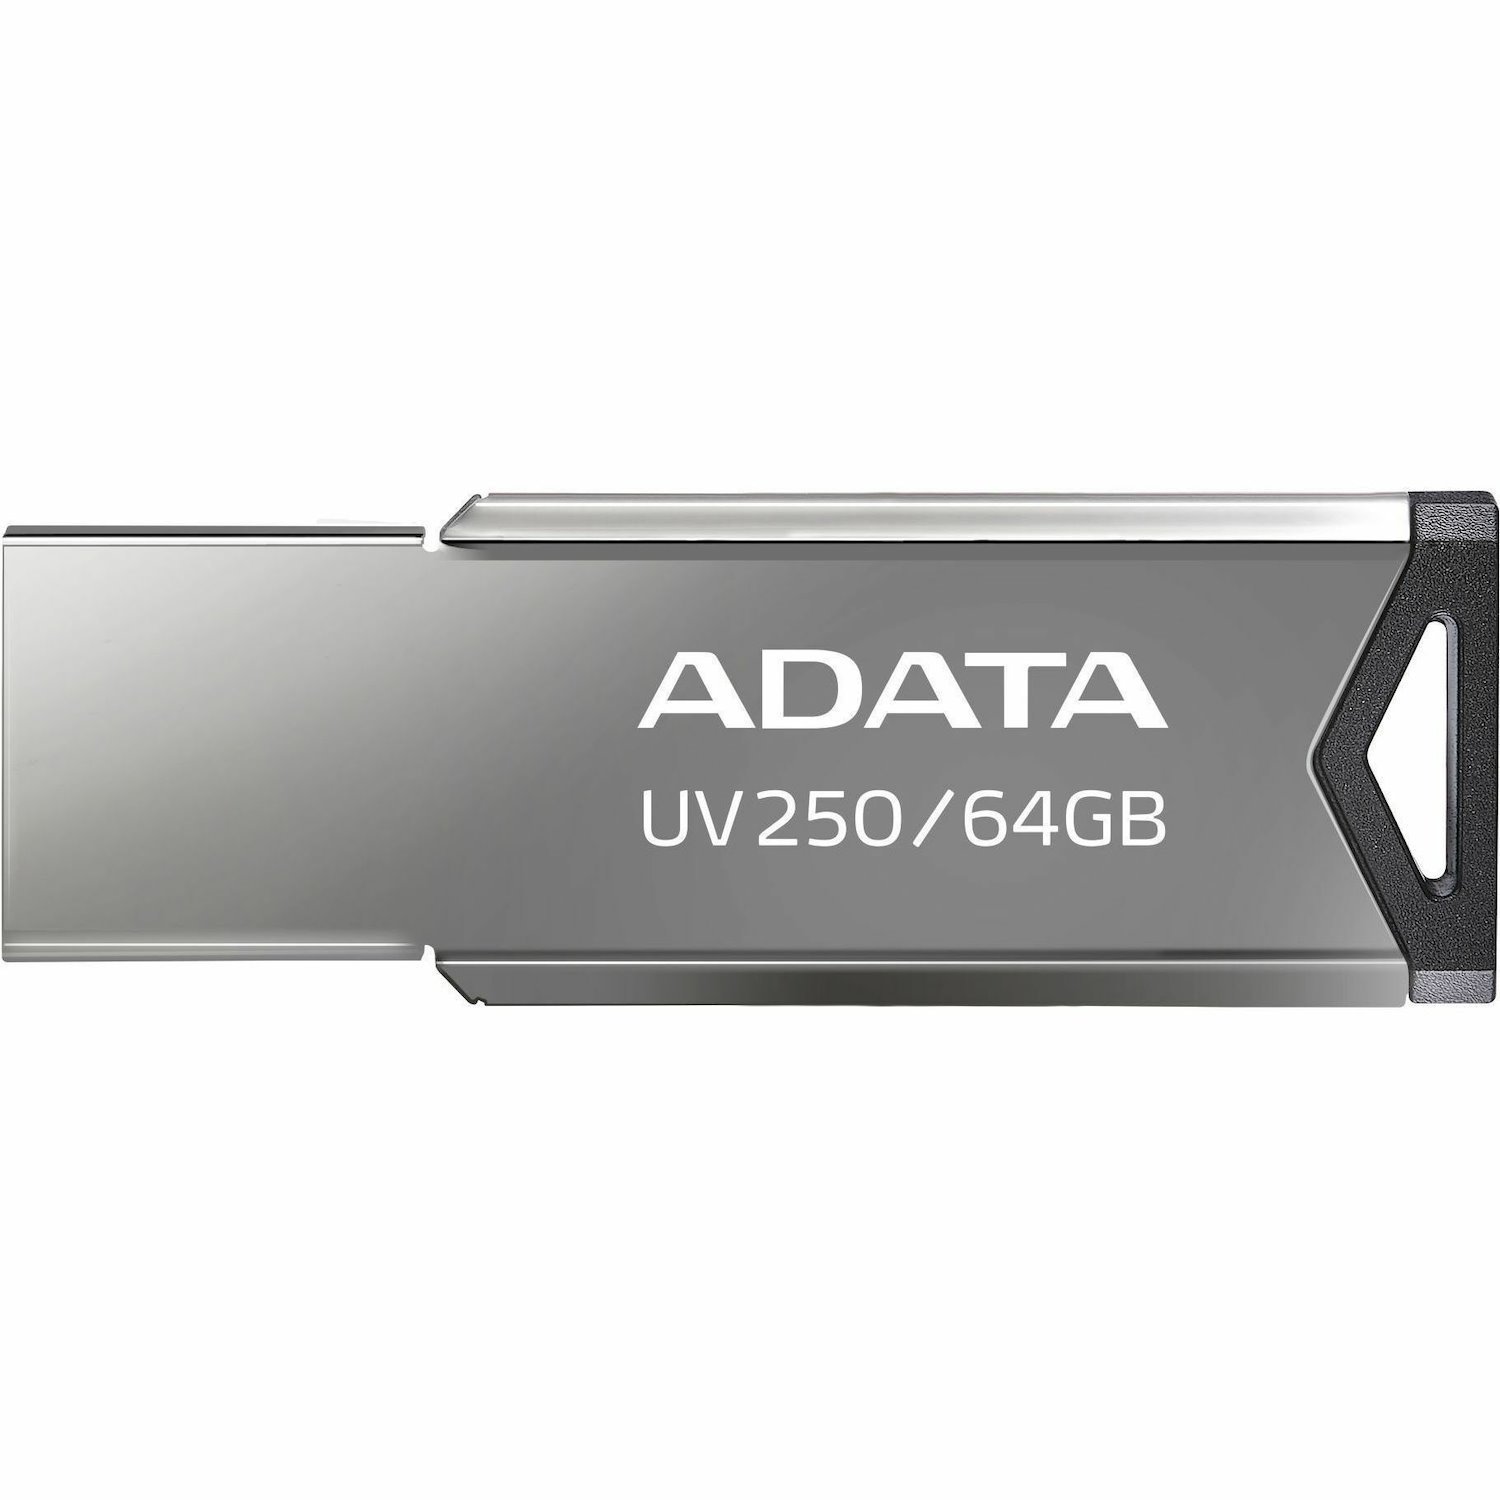 Adata Classic UV250 64GB USB 2.0 Flash Drive